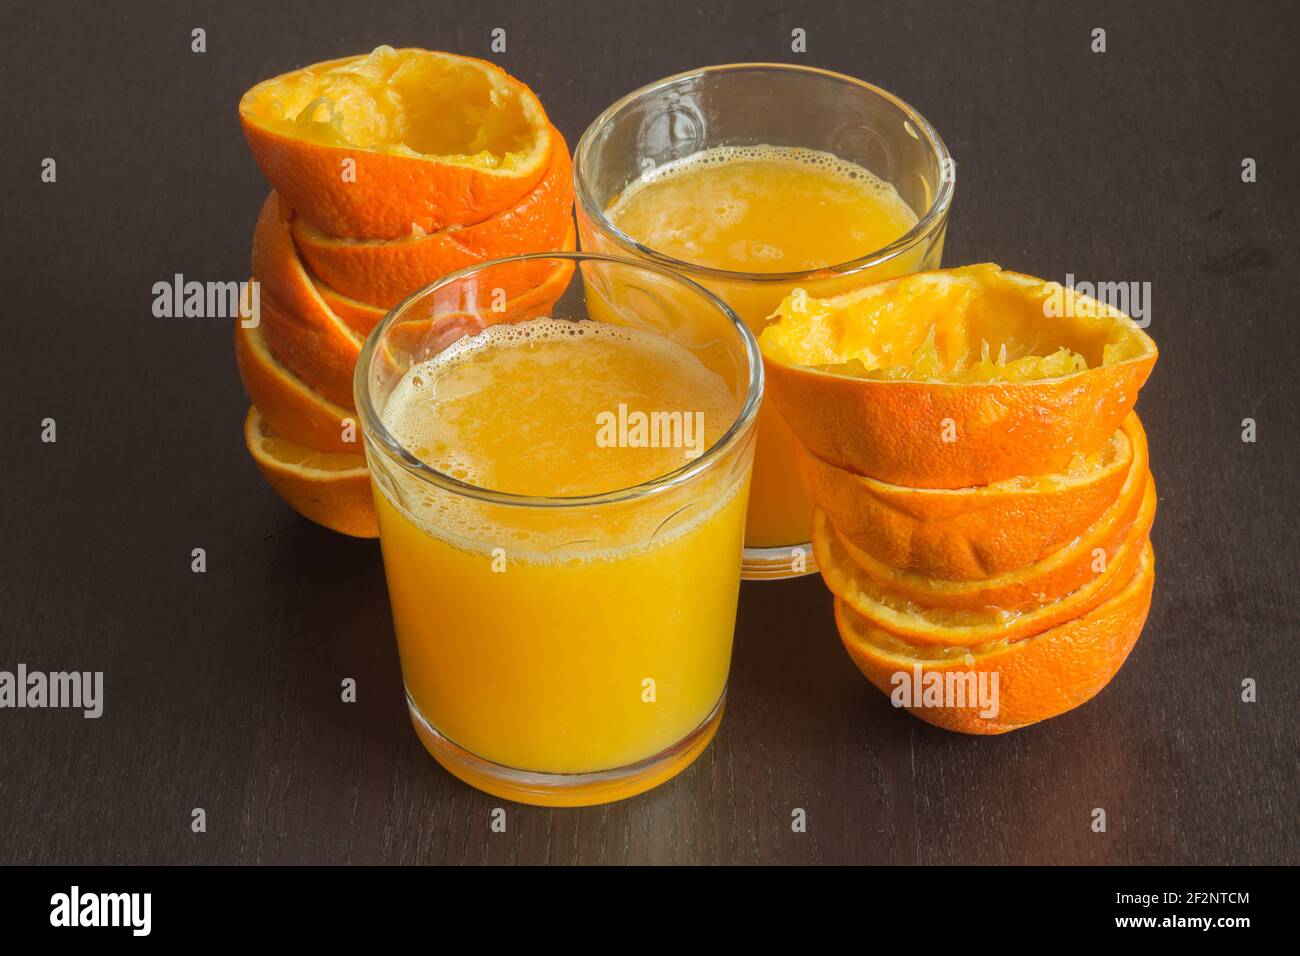 Deux verres de jus d'orange fraîchement pressé avec les fruits à côté d'eux sur une élégante table en bois sombre. Alimentation saine avec des agrumes. Banque D'Images